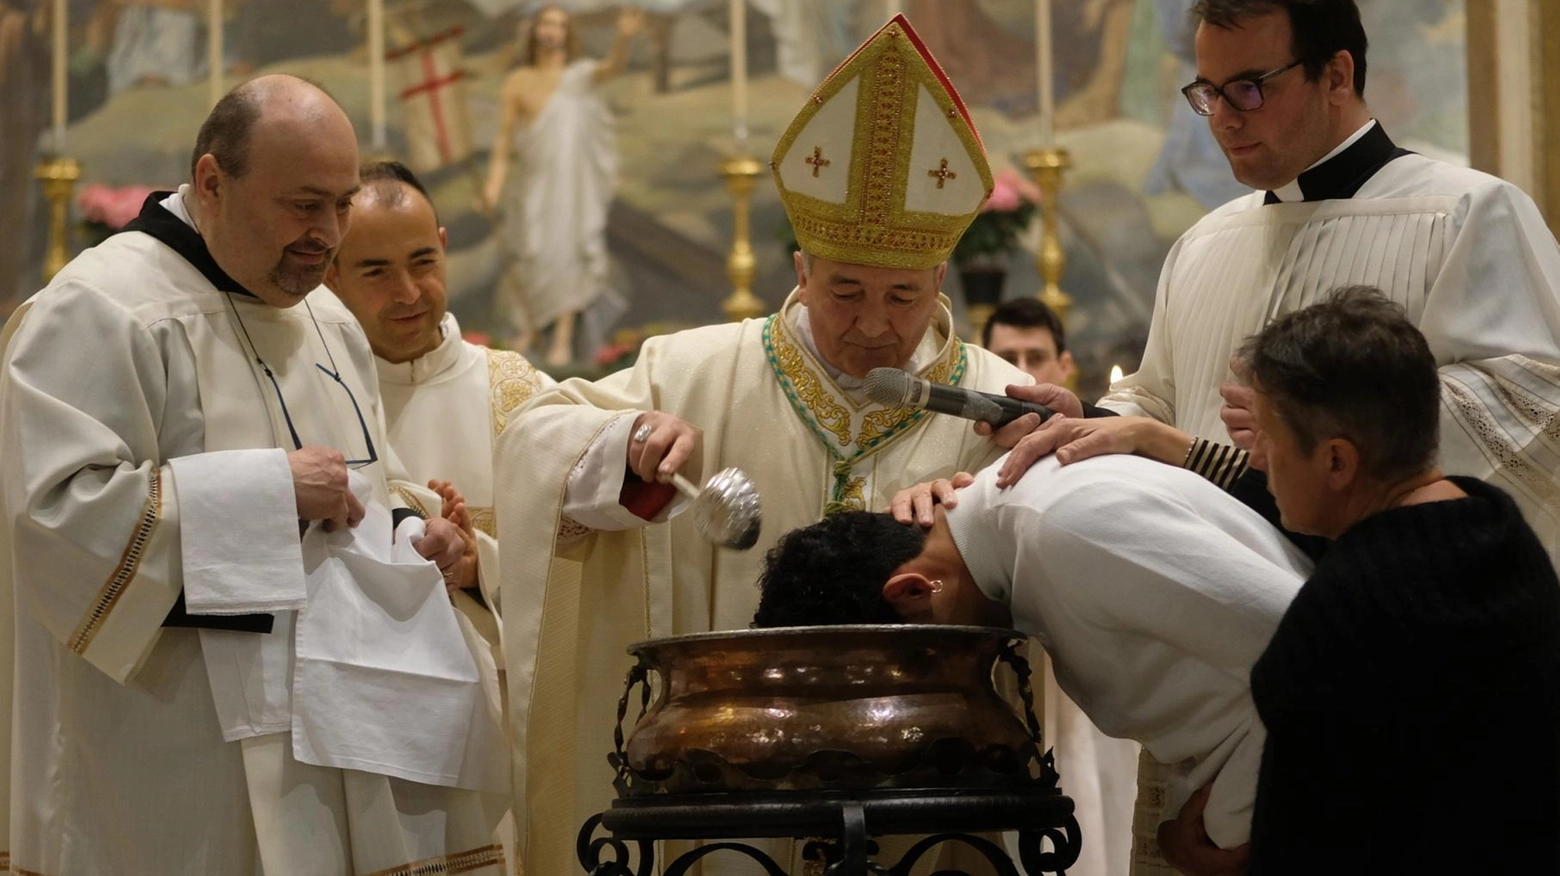 Il vescovo battezza 4 adulti  Gremita la veglia ‘unitaria’